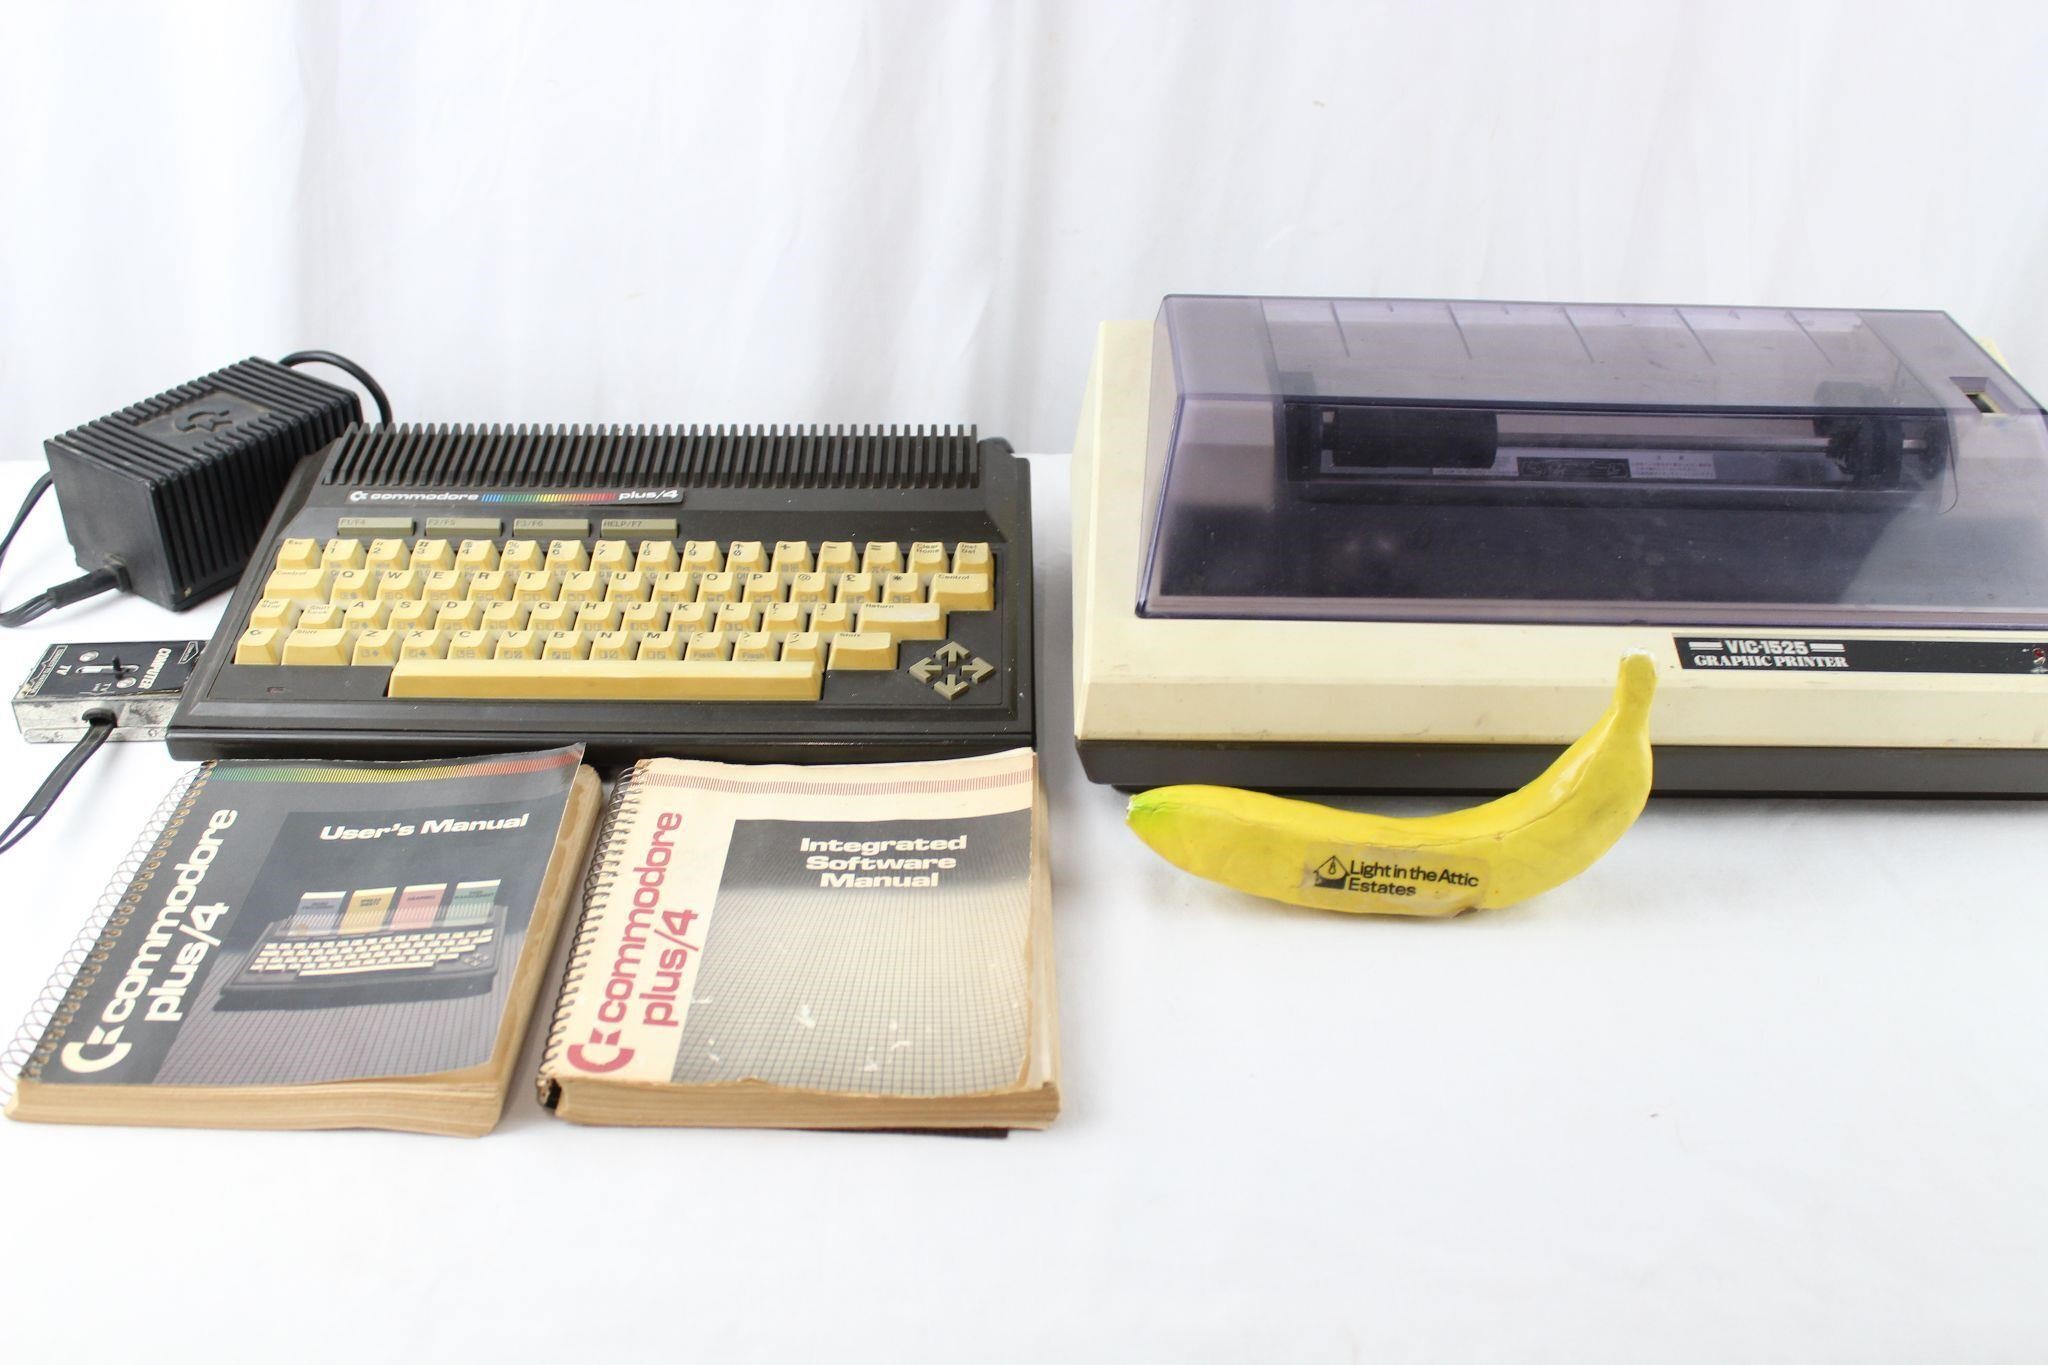 Commodore Plus 4 Processor & Graphic Printer